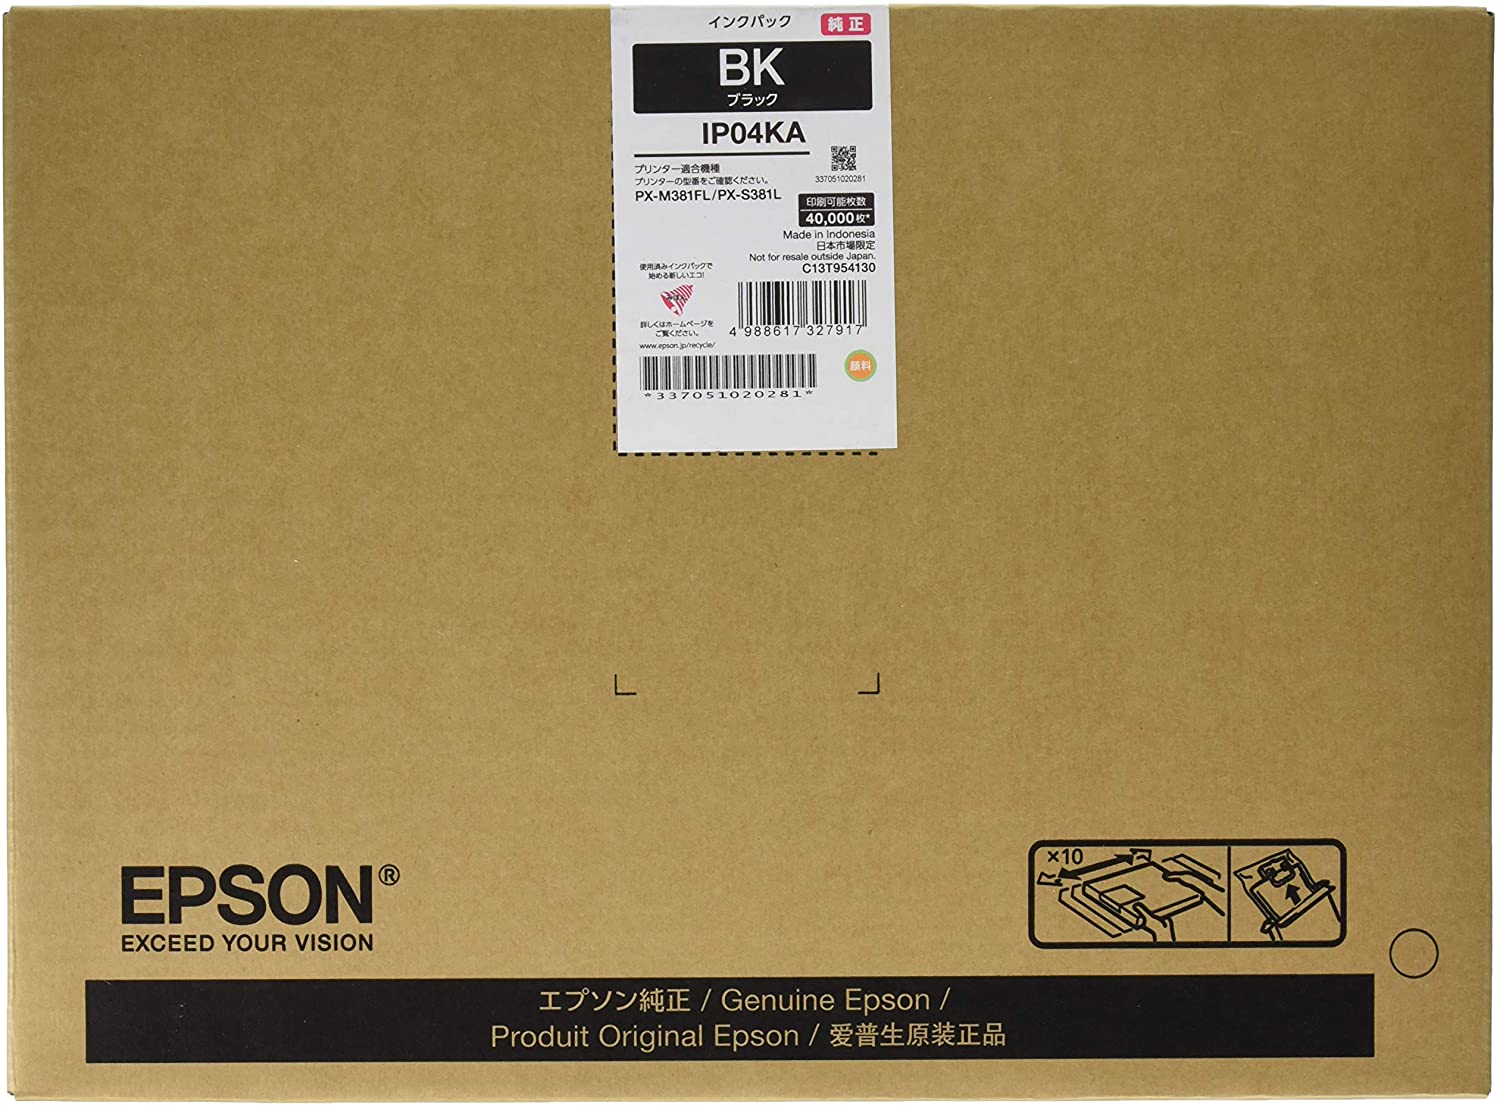 新品 トナー カートリッジ メーカー 純正 エプソン EPSON IP04KA プリンター インク ビジネス インクジェット ブラック 送料無料 4988617327917 PX-M381FL / PX-S381L / PX-M380F / PX-S380 トナー